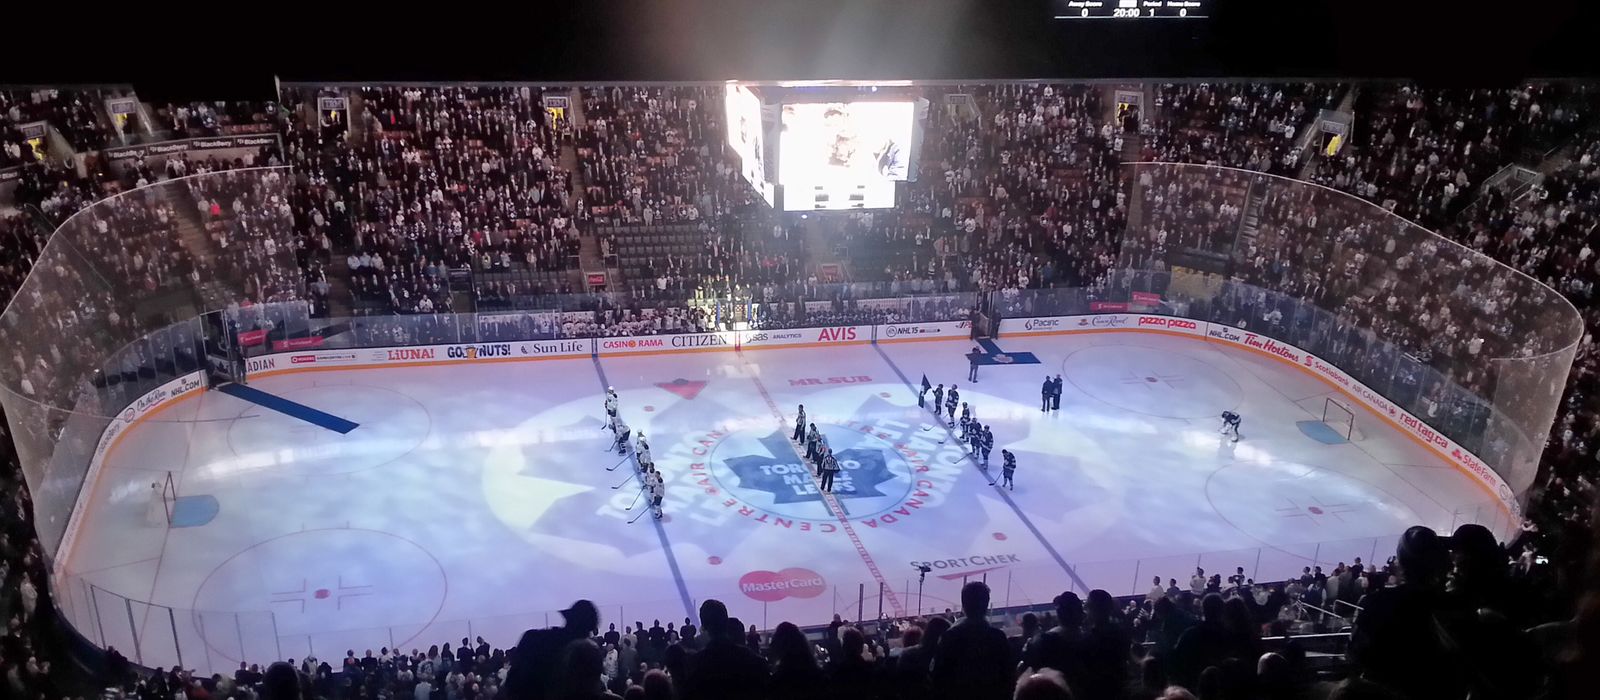 Eishockeyspiel der Maple Leafs in Toronto, Ontario